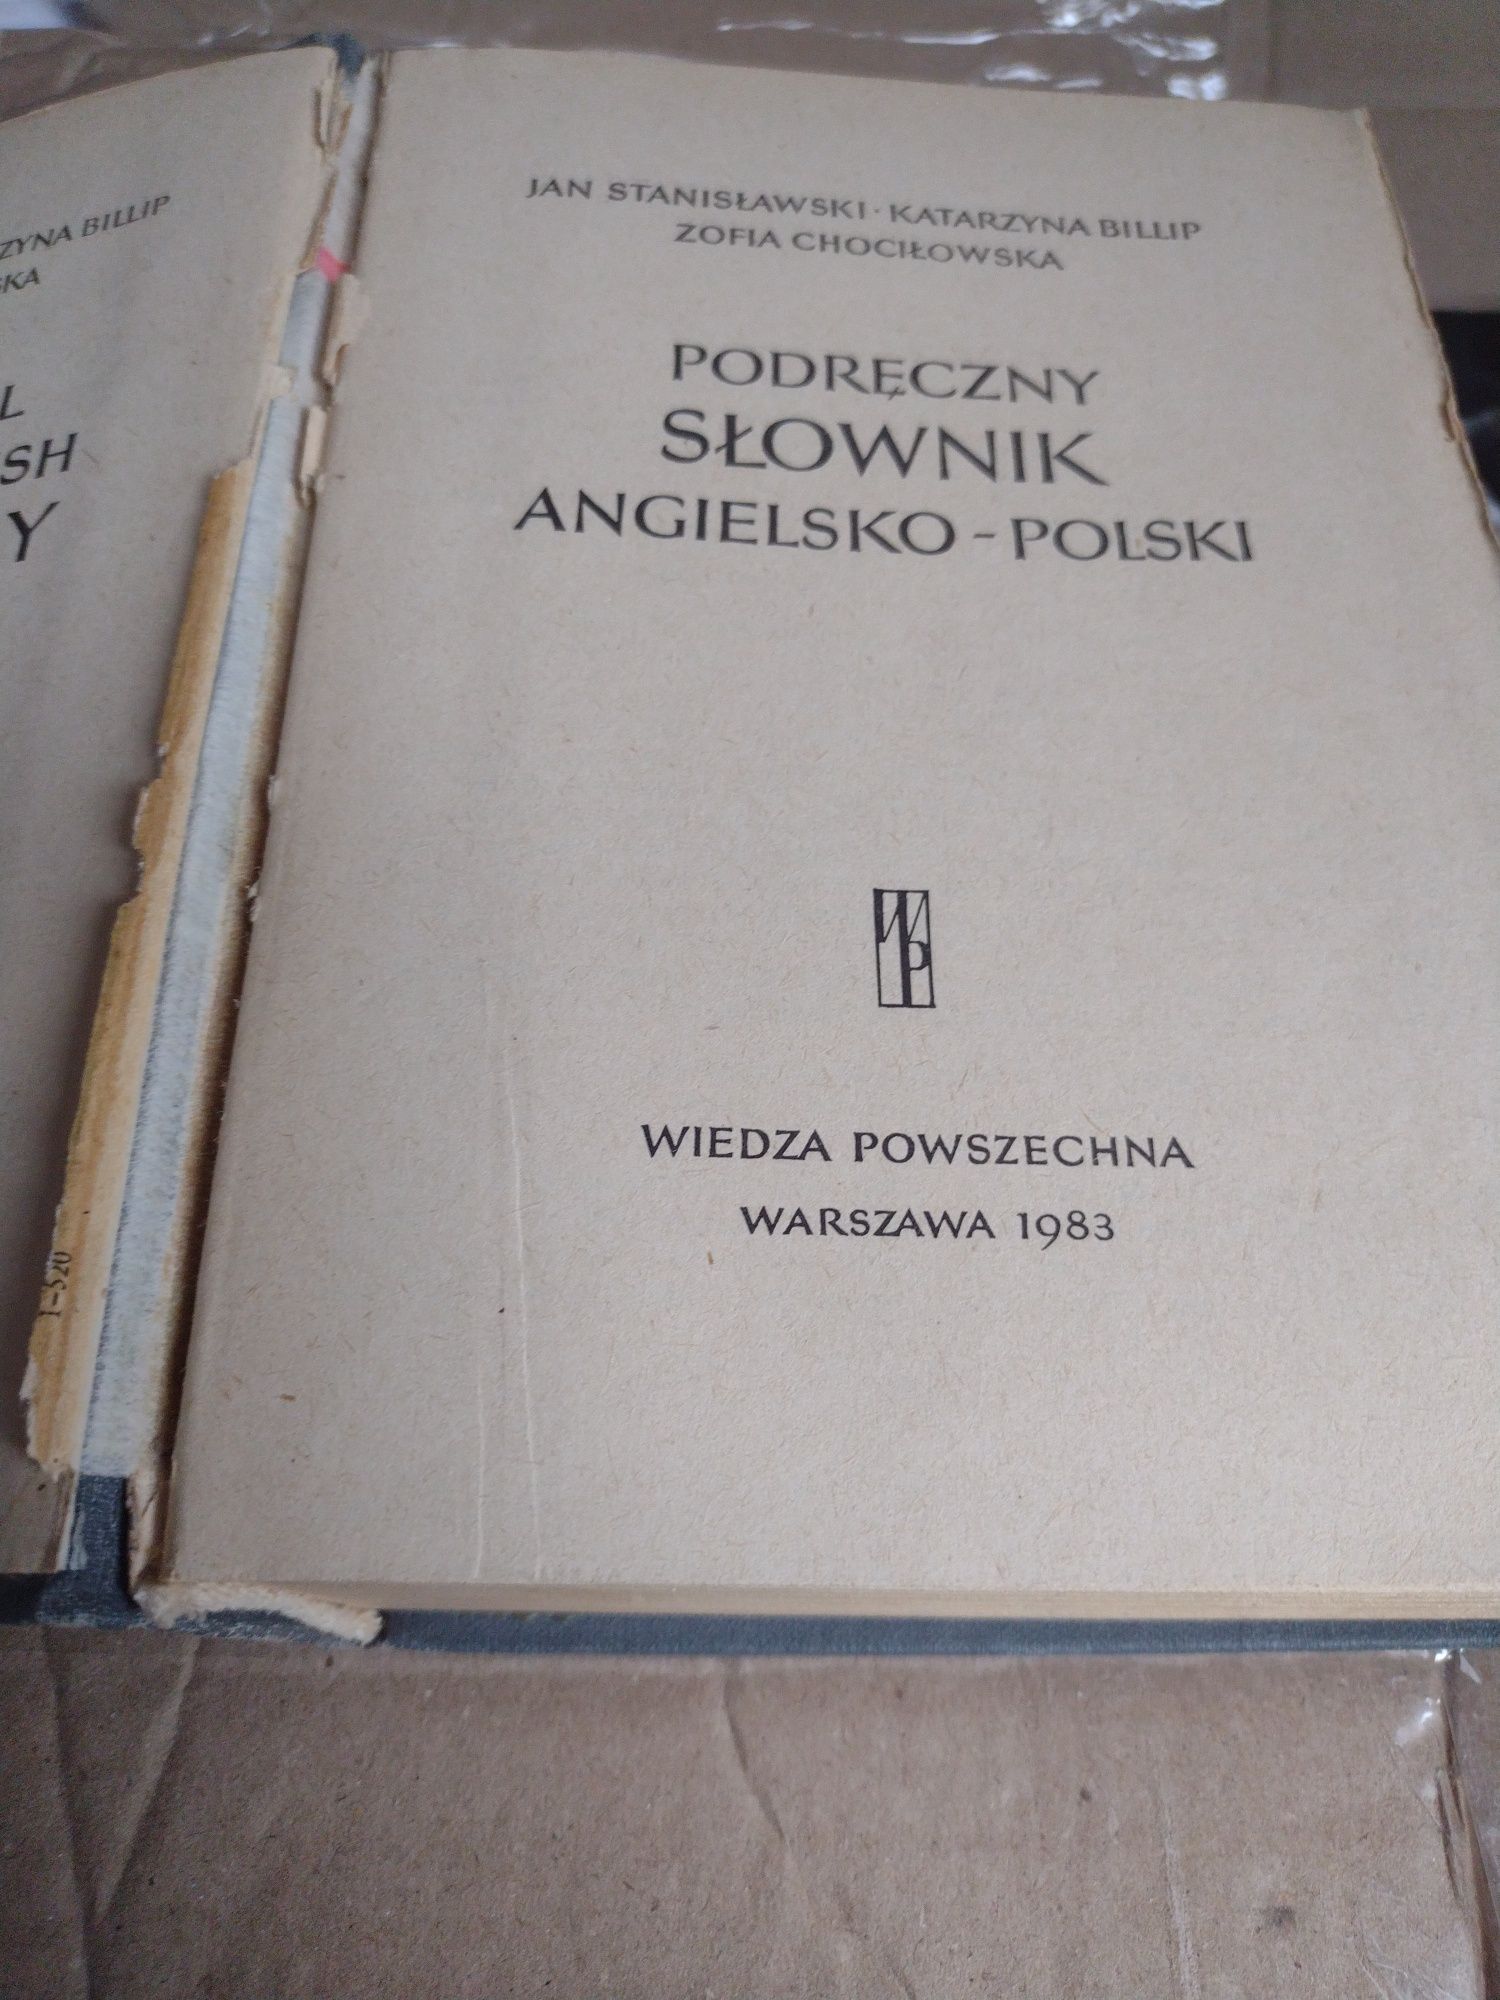 Podręczny słownik angielsko-polski Wiedza powszechna 1983